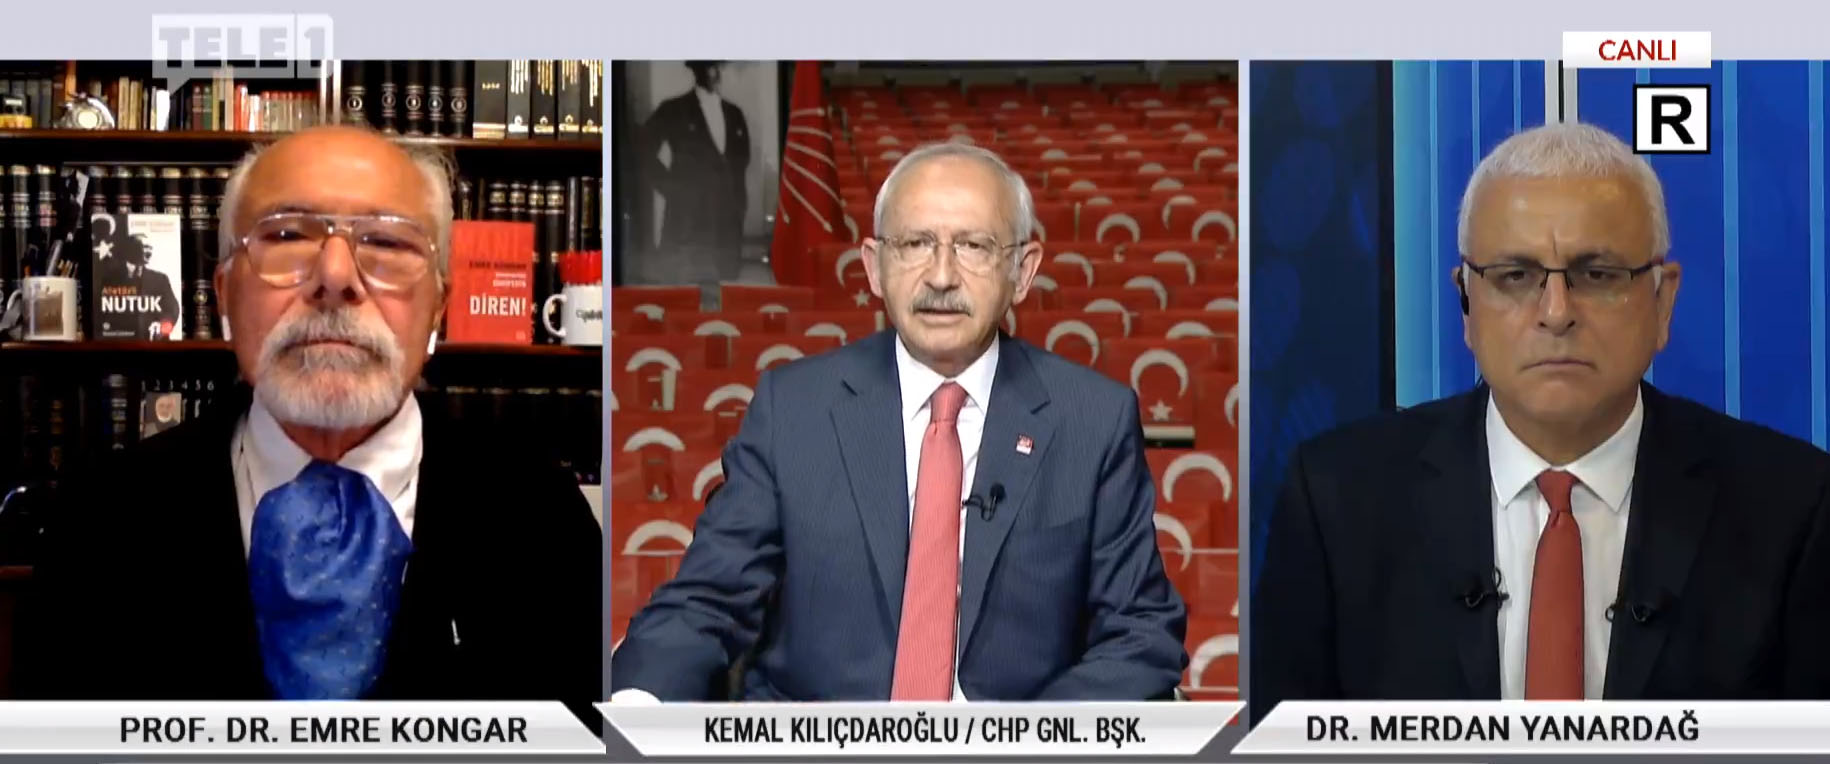 Kılıçdaroğlu: Hem darbecilere karşıyım diyeceksin hem o yasaların arkasından tahkim edeceksin!